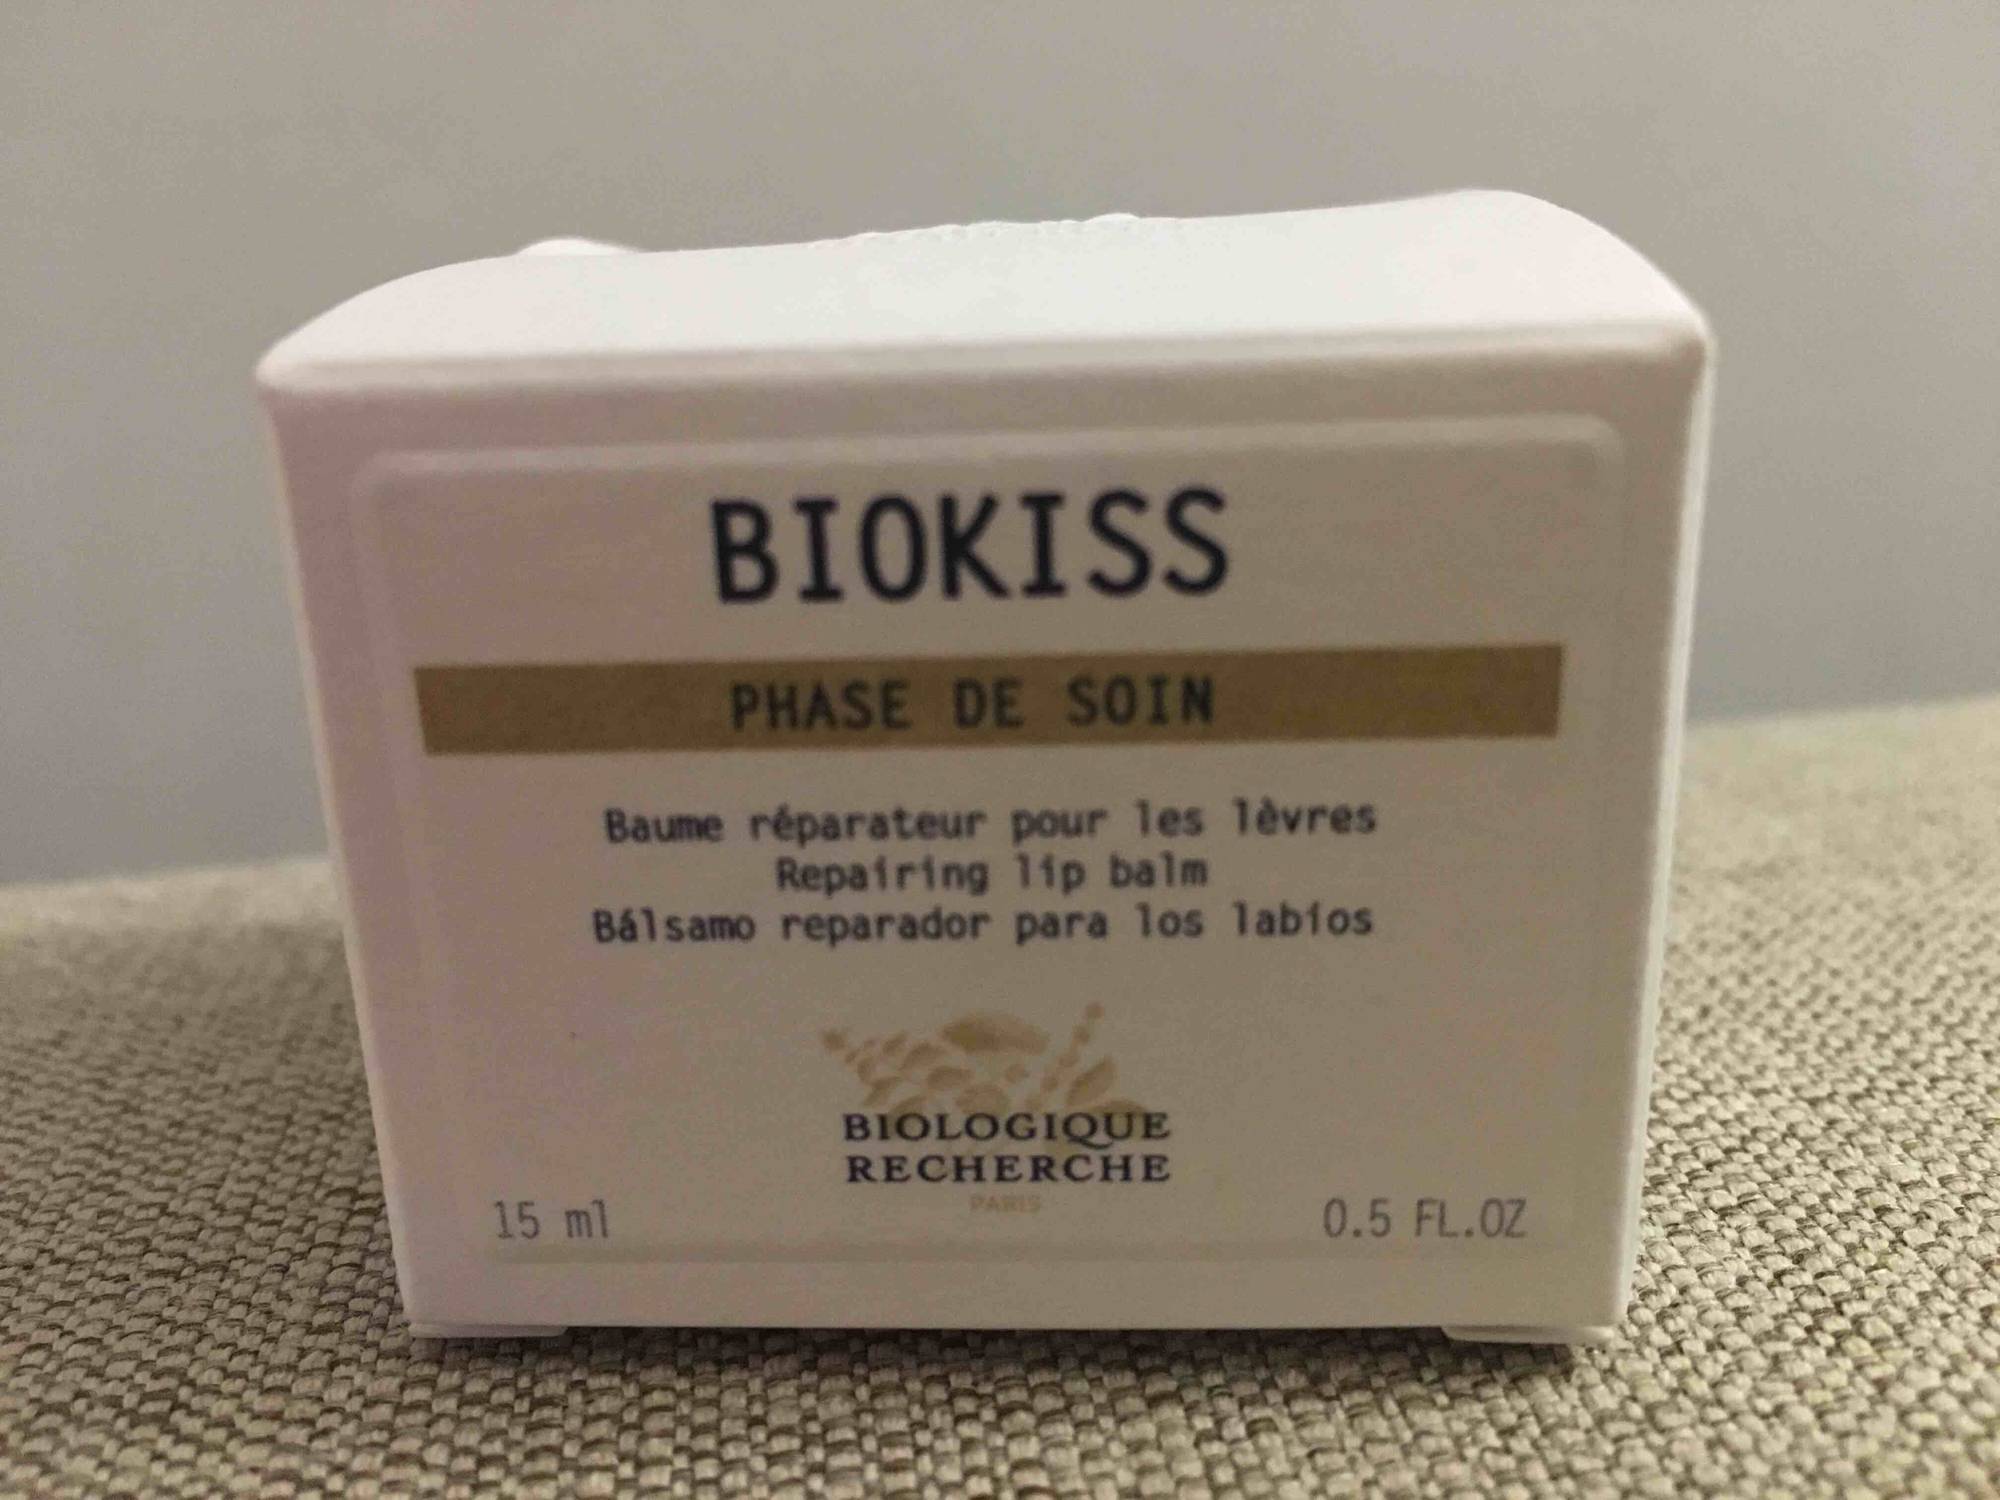 BIOLOGIQUE RECHERCHE - Biokiss phase de soin - Baume réparateur pour les lèvres